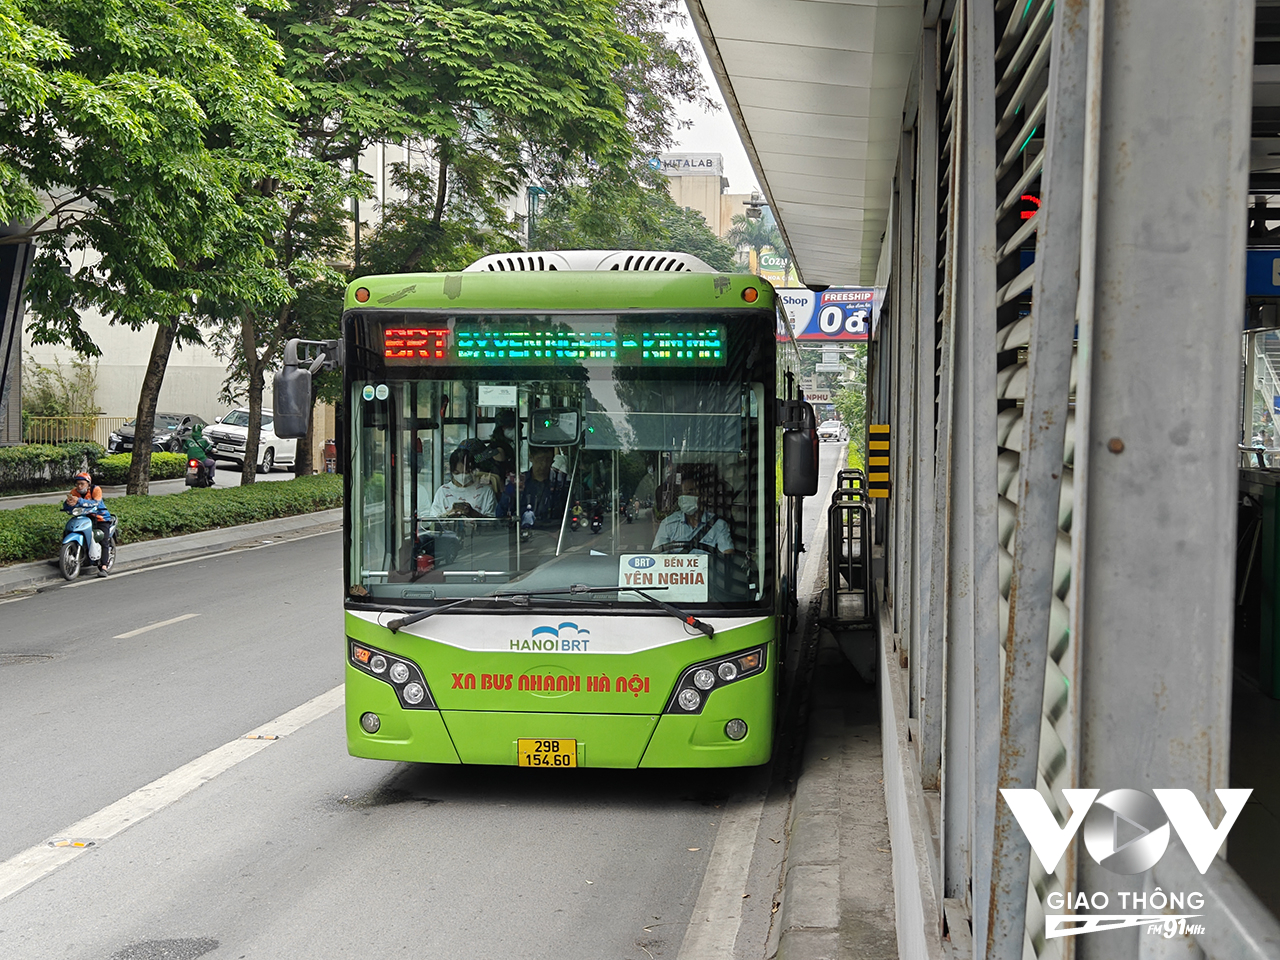 Tuyến buýt nhanh BRT số 01 Yên Nghĩa-Kim Mã được chính quyền Hà Nội dự định thay thế bằng đường sắt đô thị. Suốt 7 năm qua, nó vẫn là tuyến BRT duy nhất của Thủ đô.